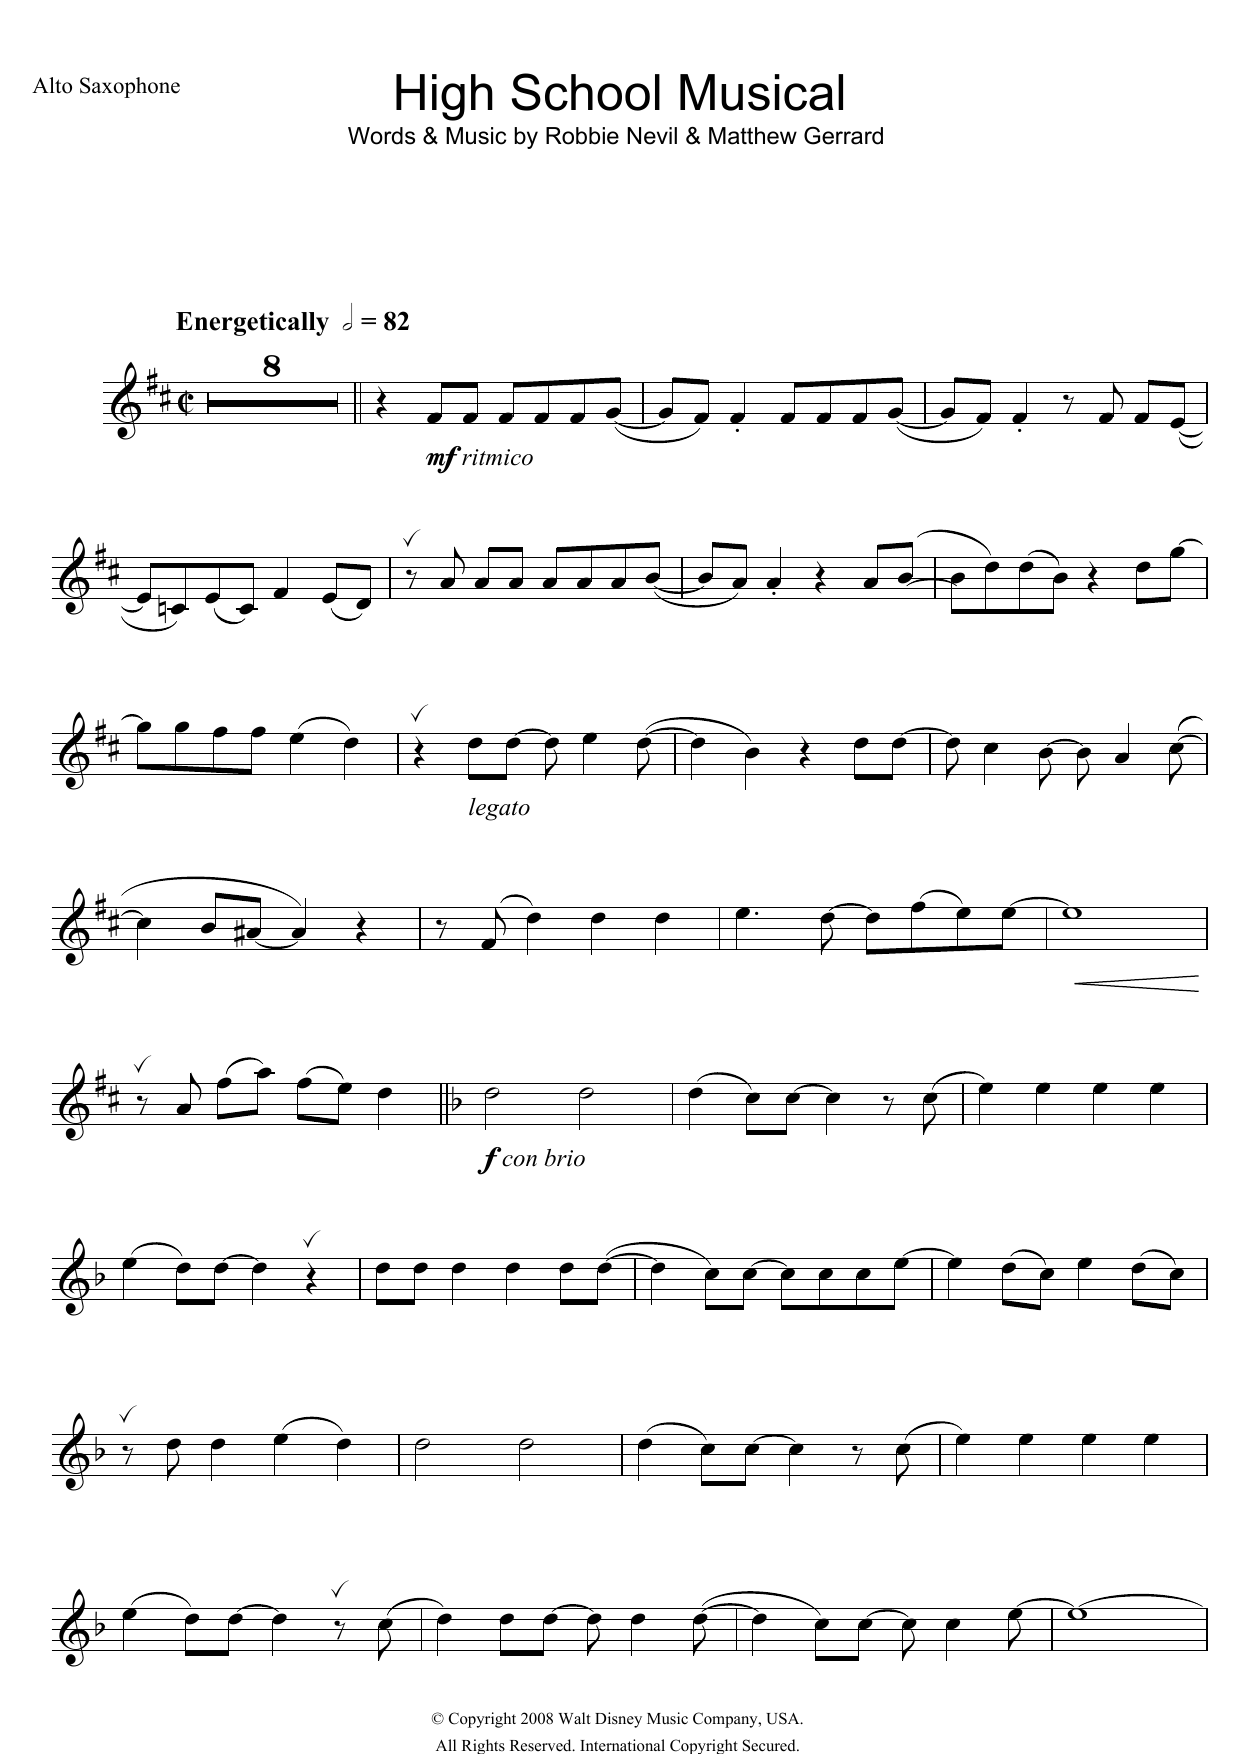 Download High School Musical High School Musical (from Walt Disney P Sheet Music